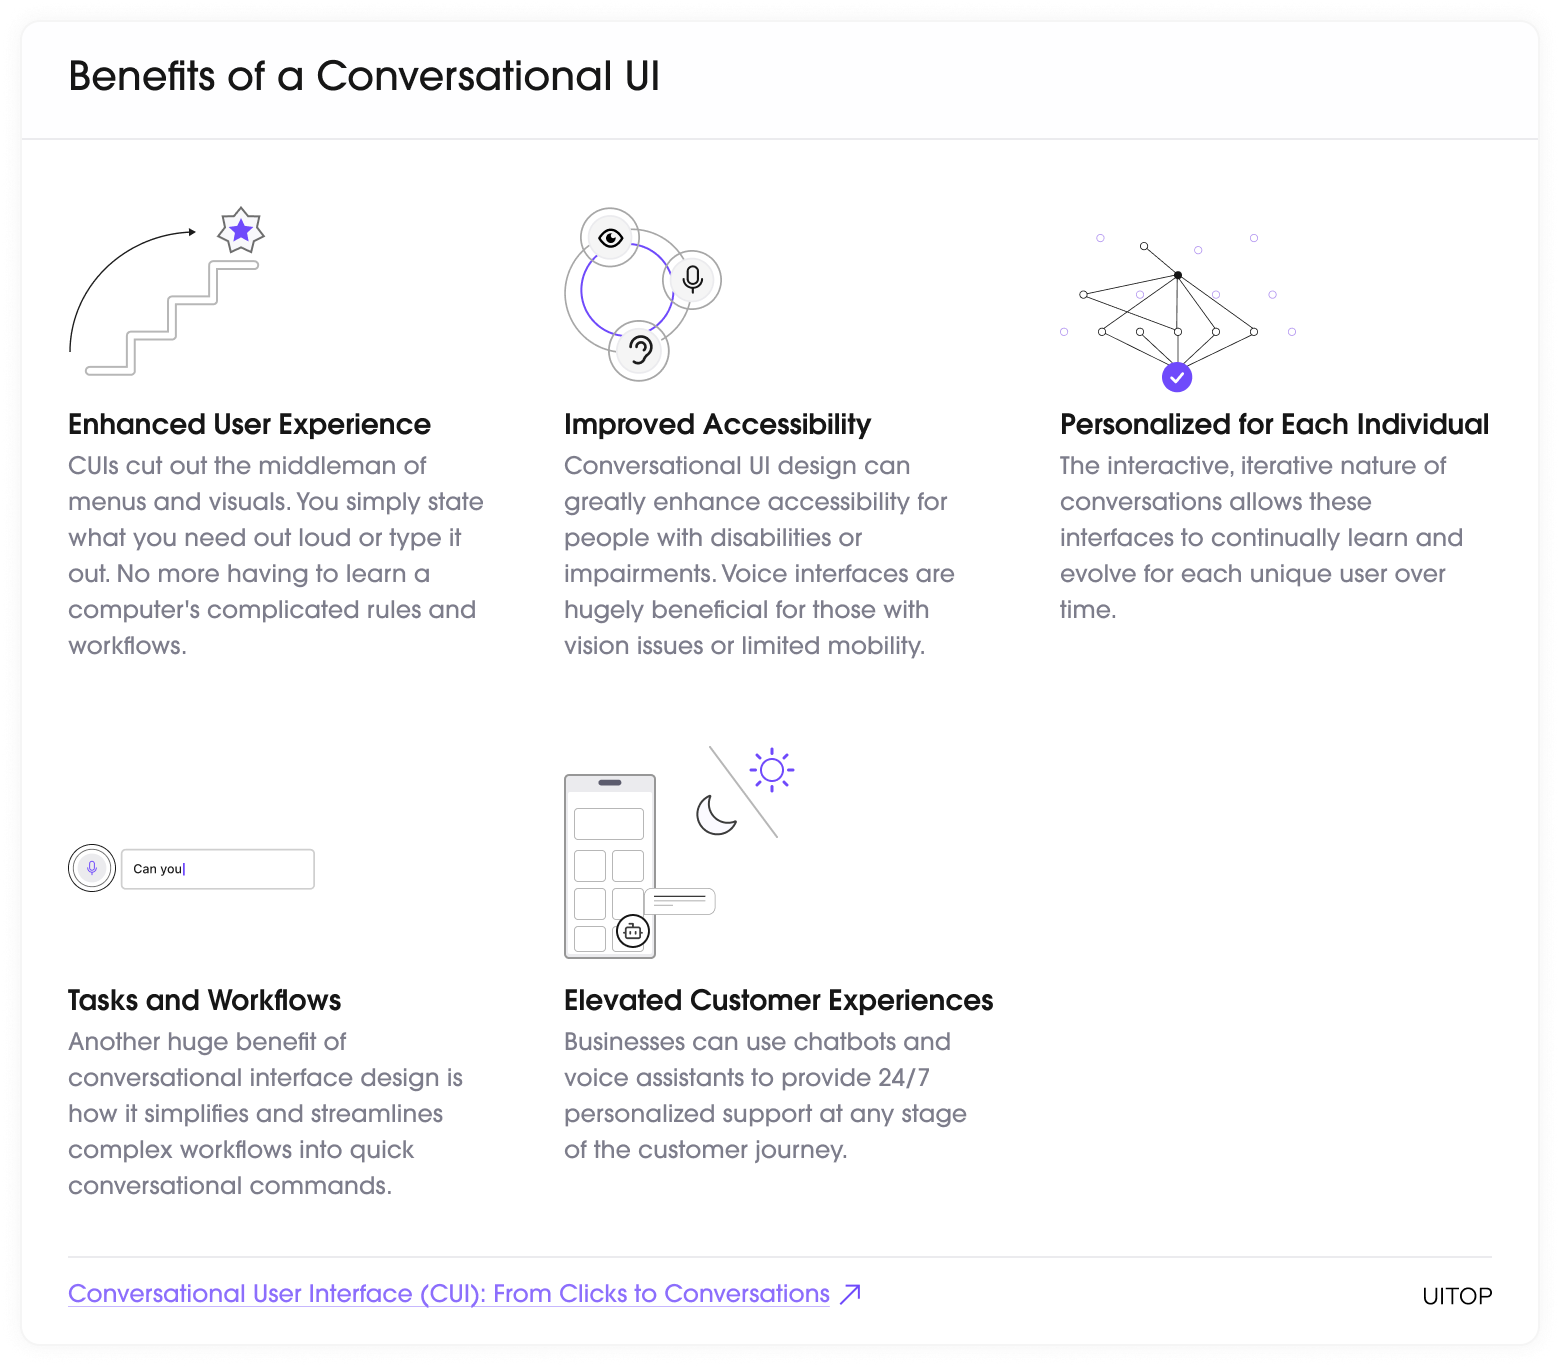 Benefits of a Conversational User Interface